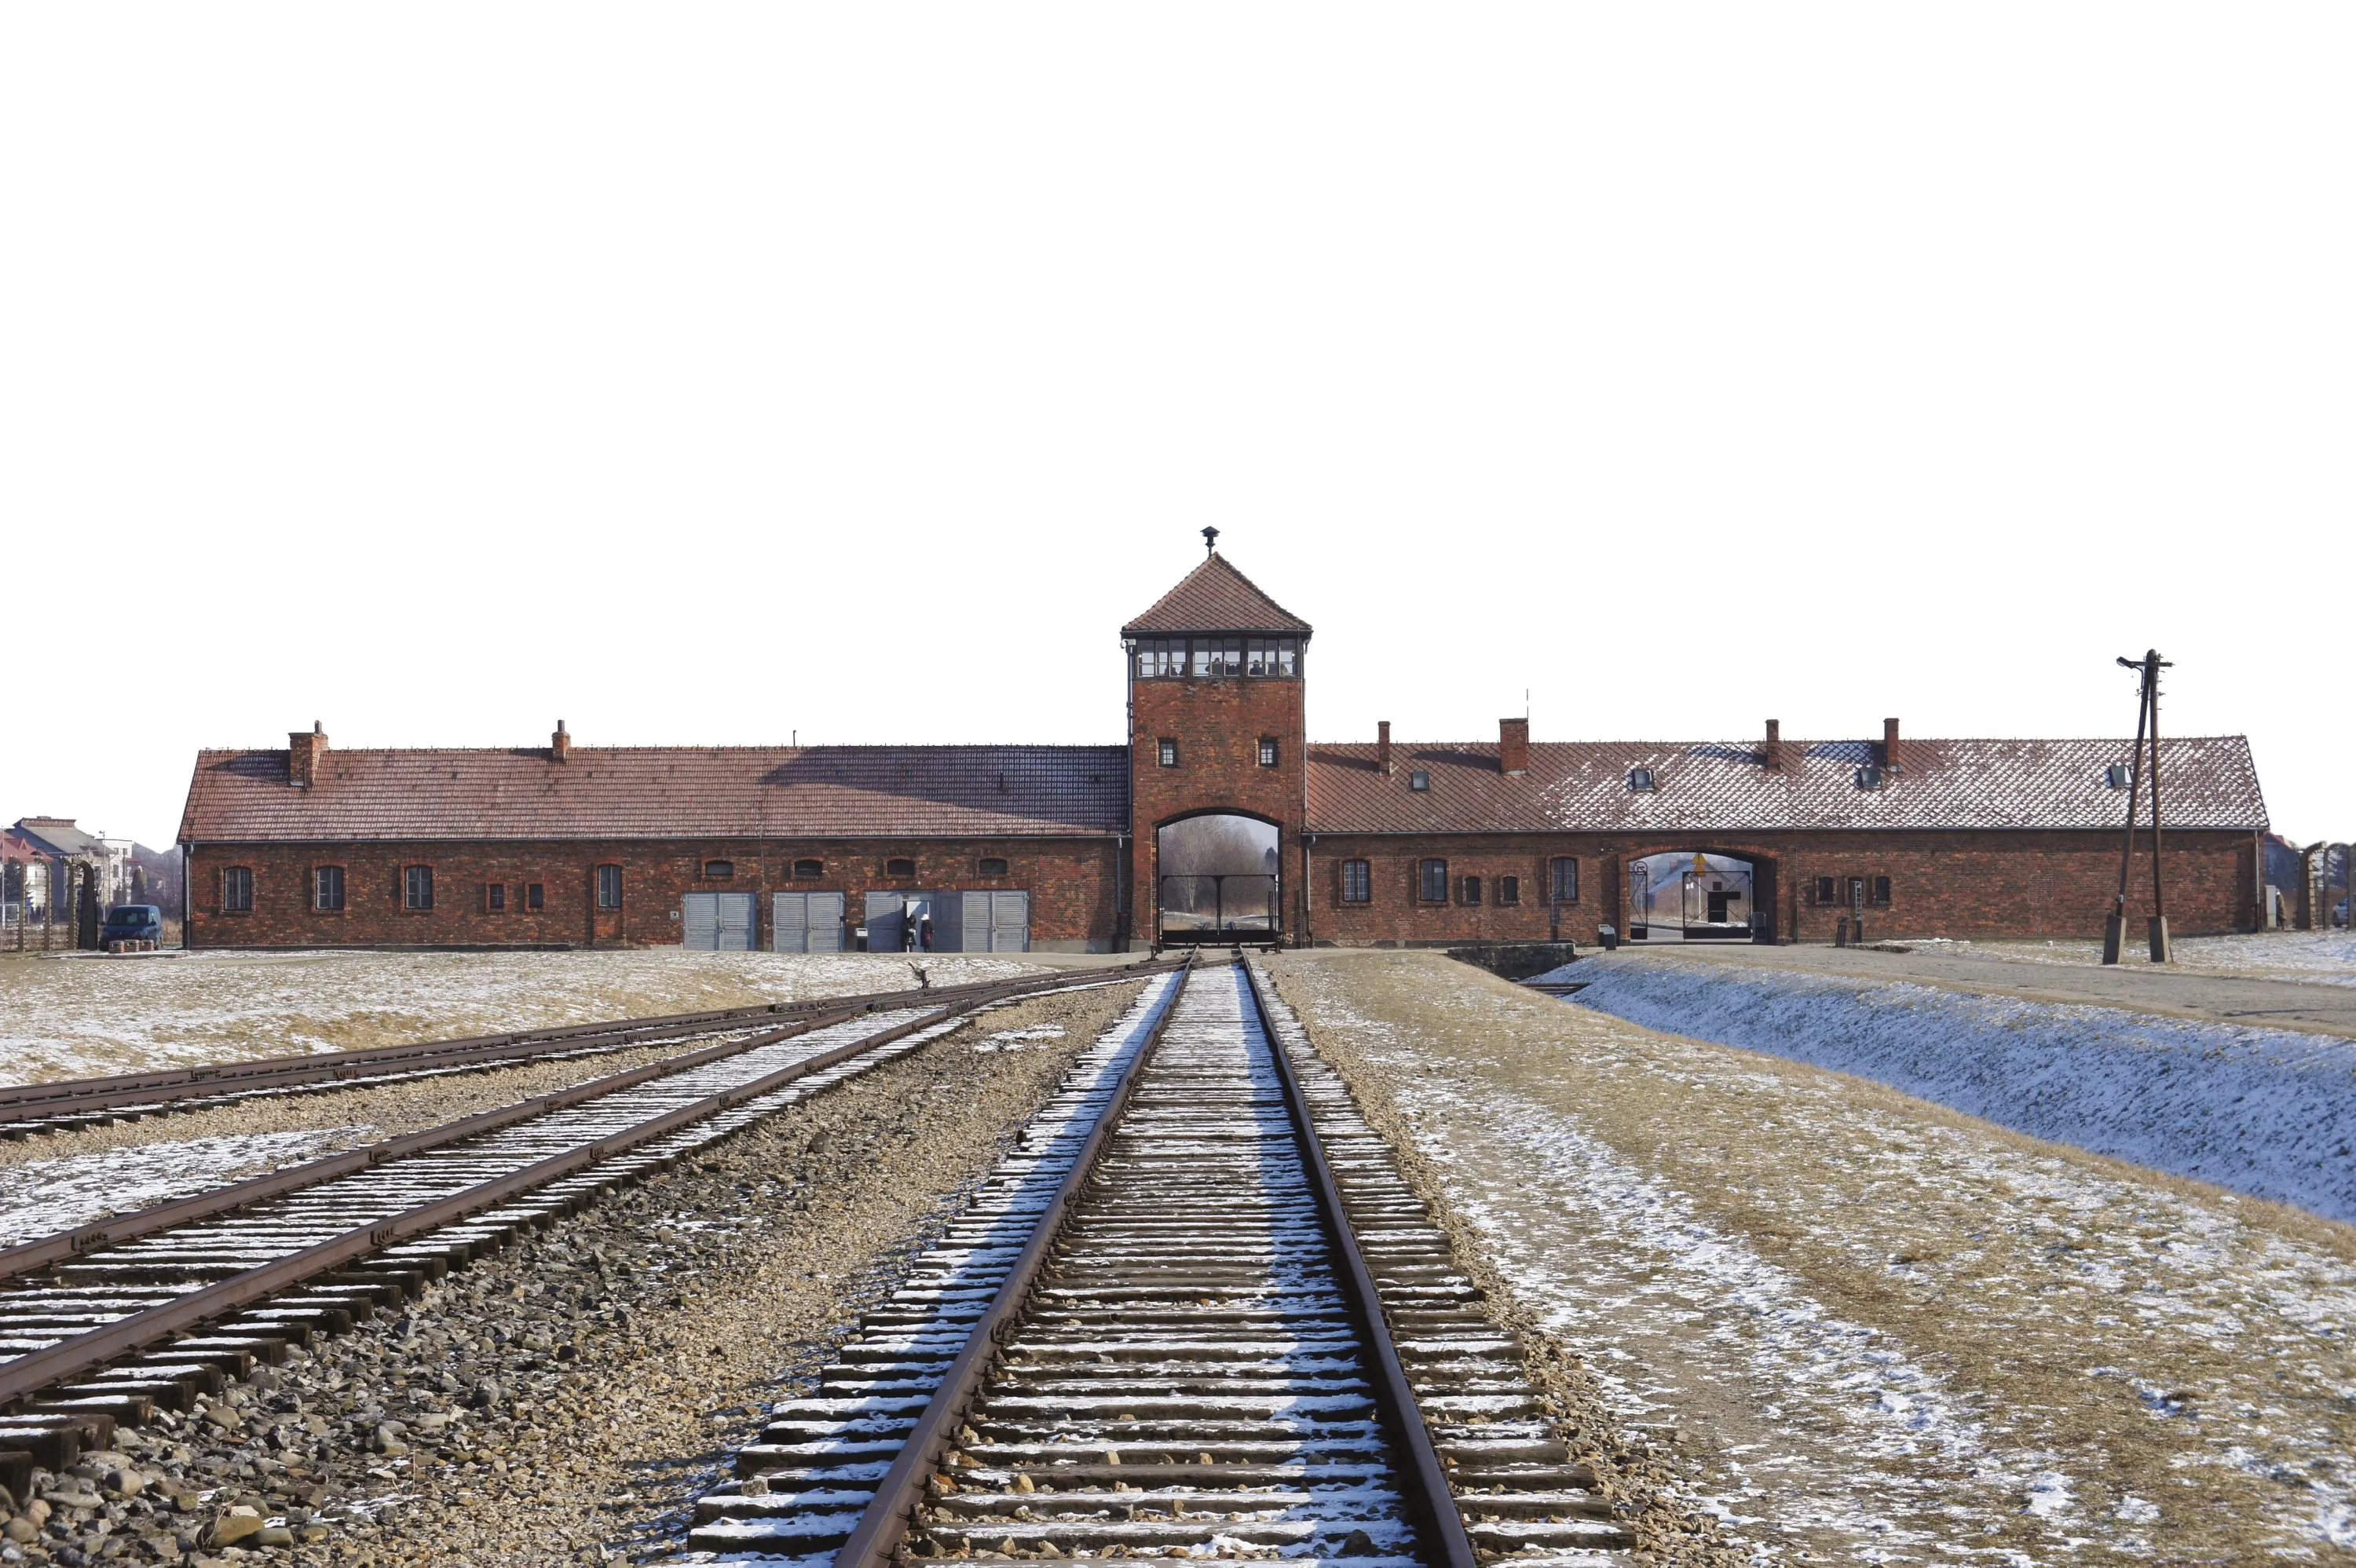 Entrée de Birkenau (camp d'Auschwitz II), vue depuis l'intérieur du camp, de nos jours.